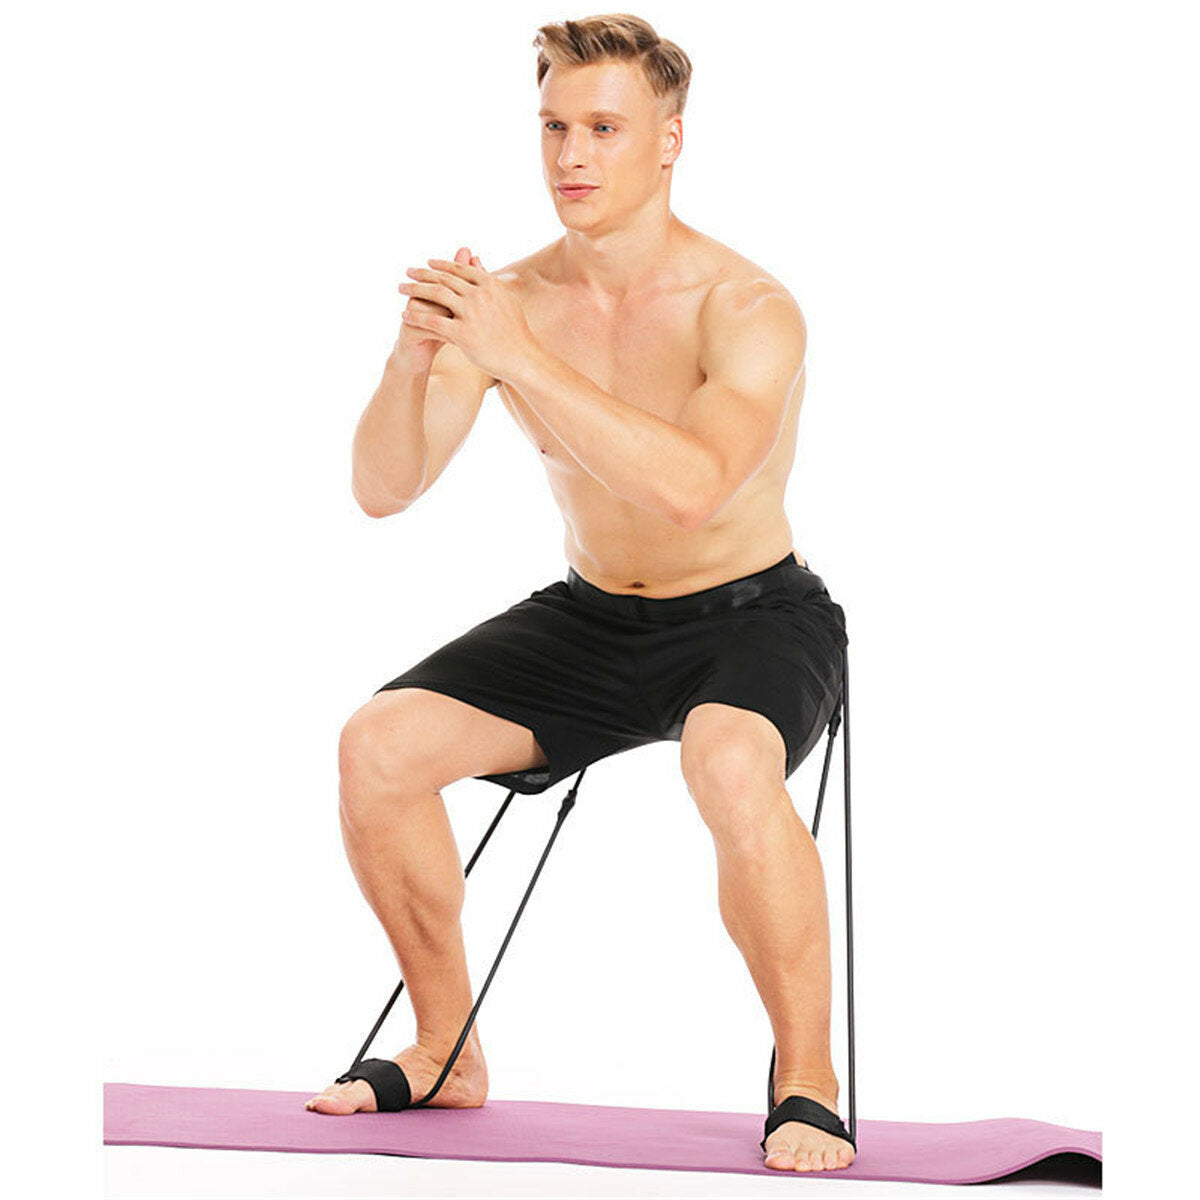 Adjustable Exercise Fitness Resistance Band Rope Latex Elastic Gym Yoga Pilates Sports Bandage